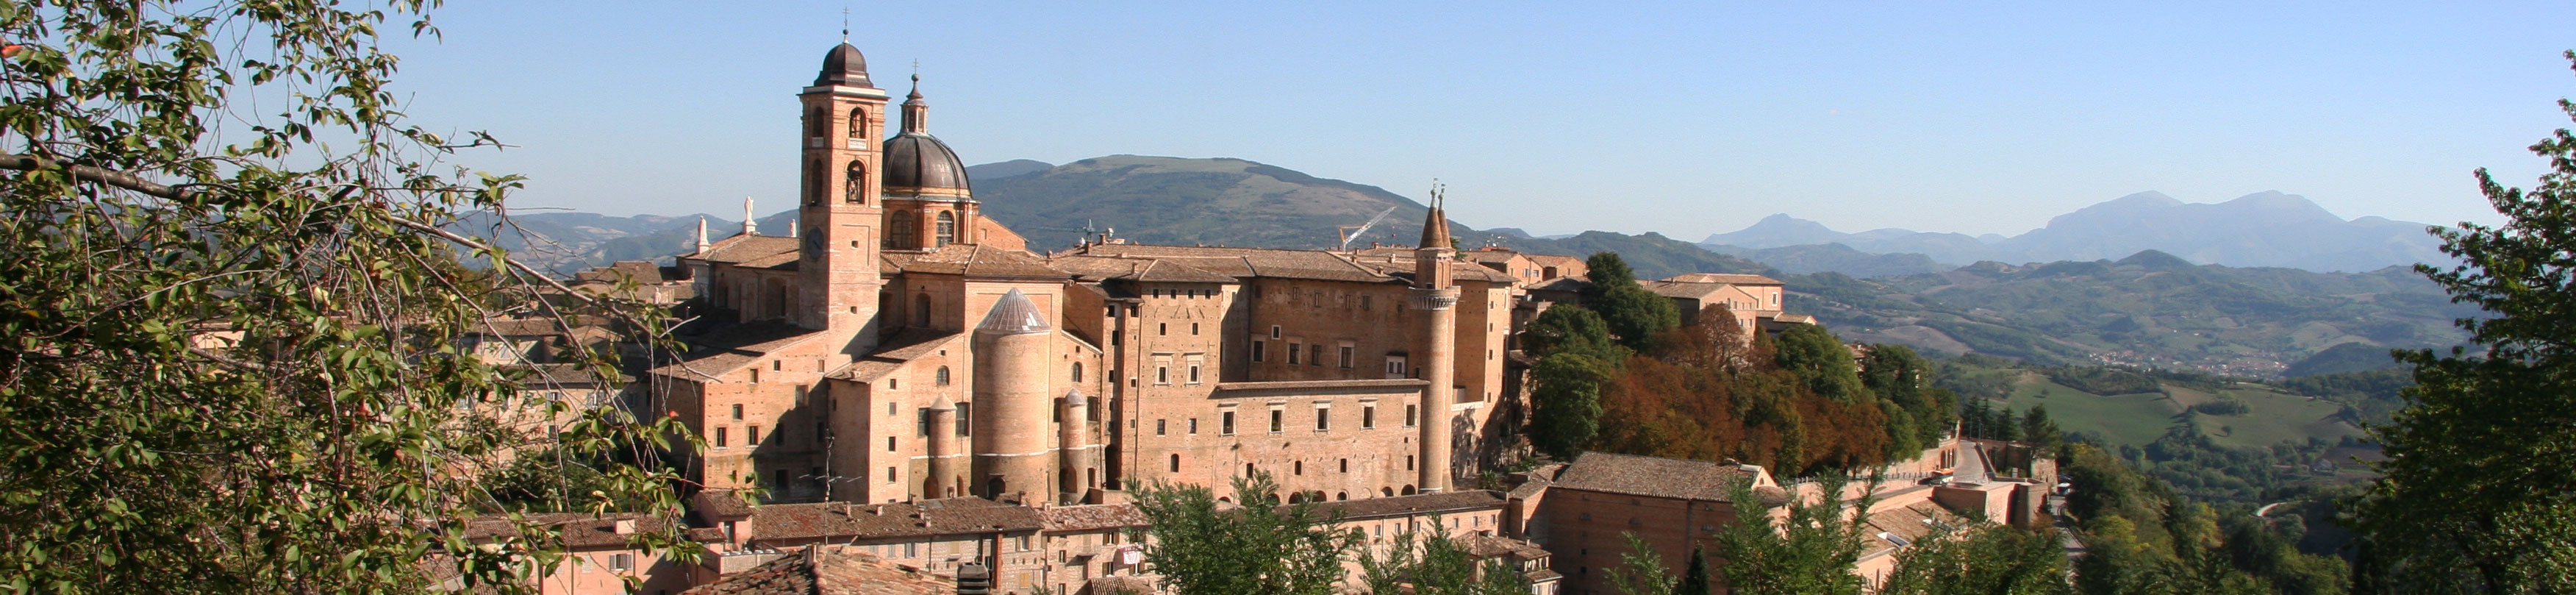 Urbino in Italy Marche